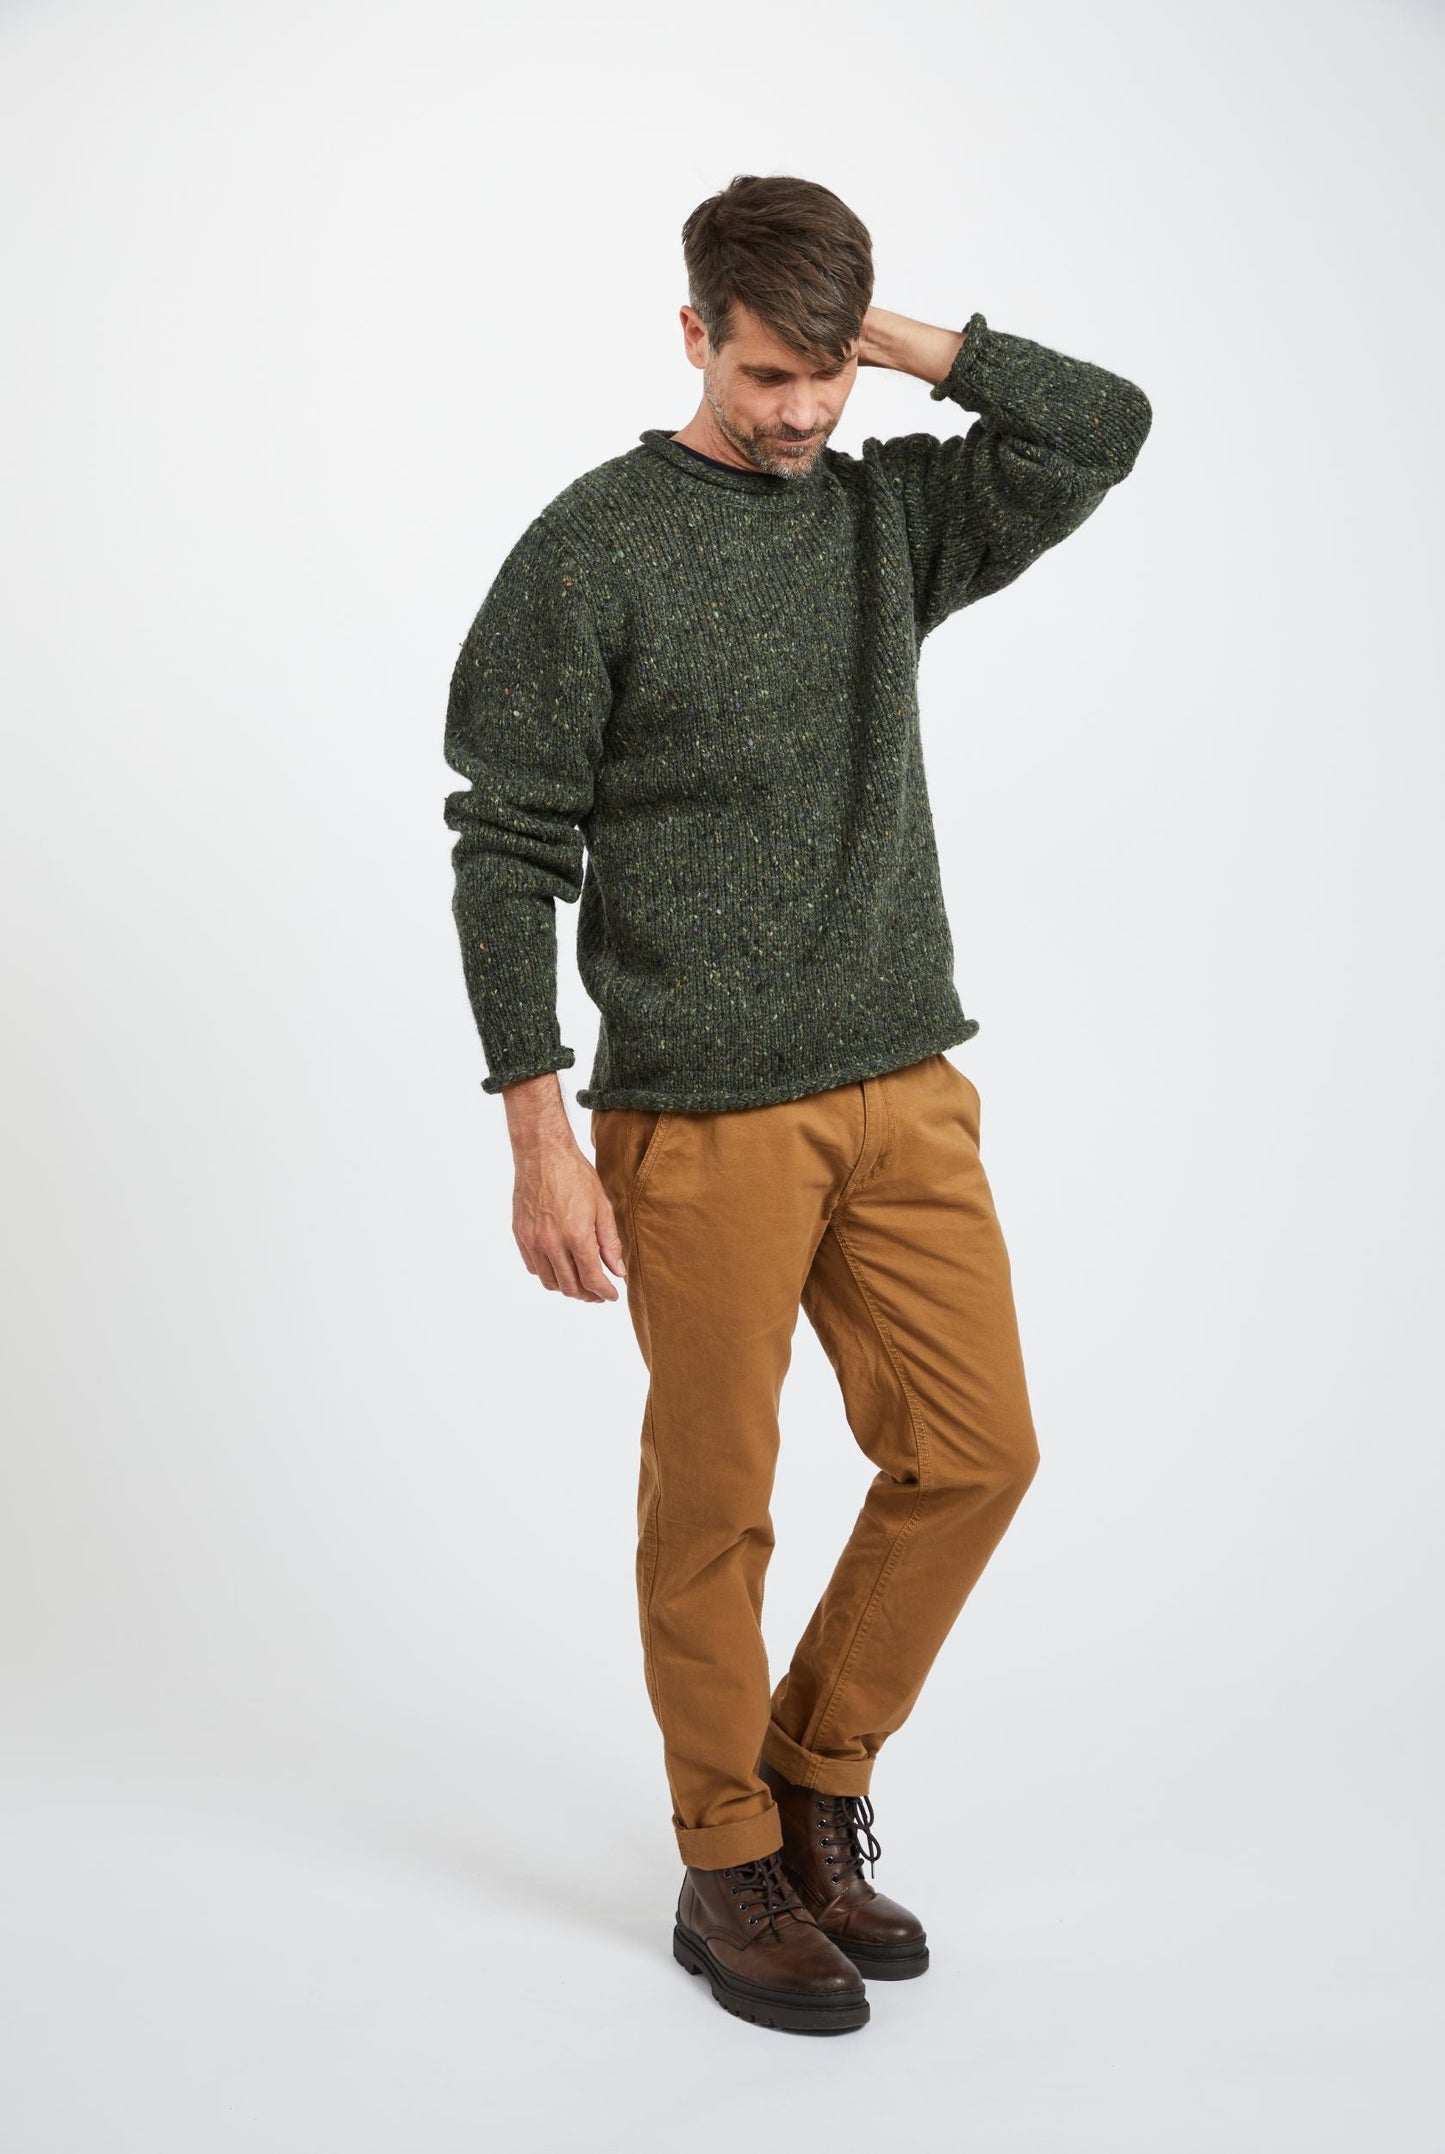 Raheen Tweed Rollneck Men's Sweater - Green